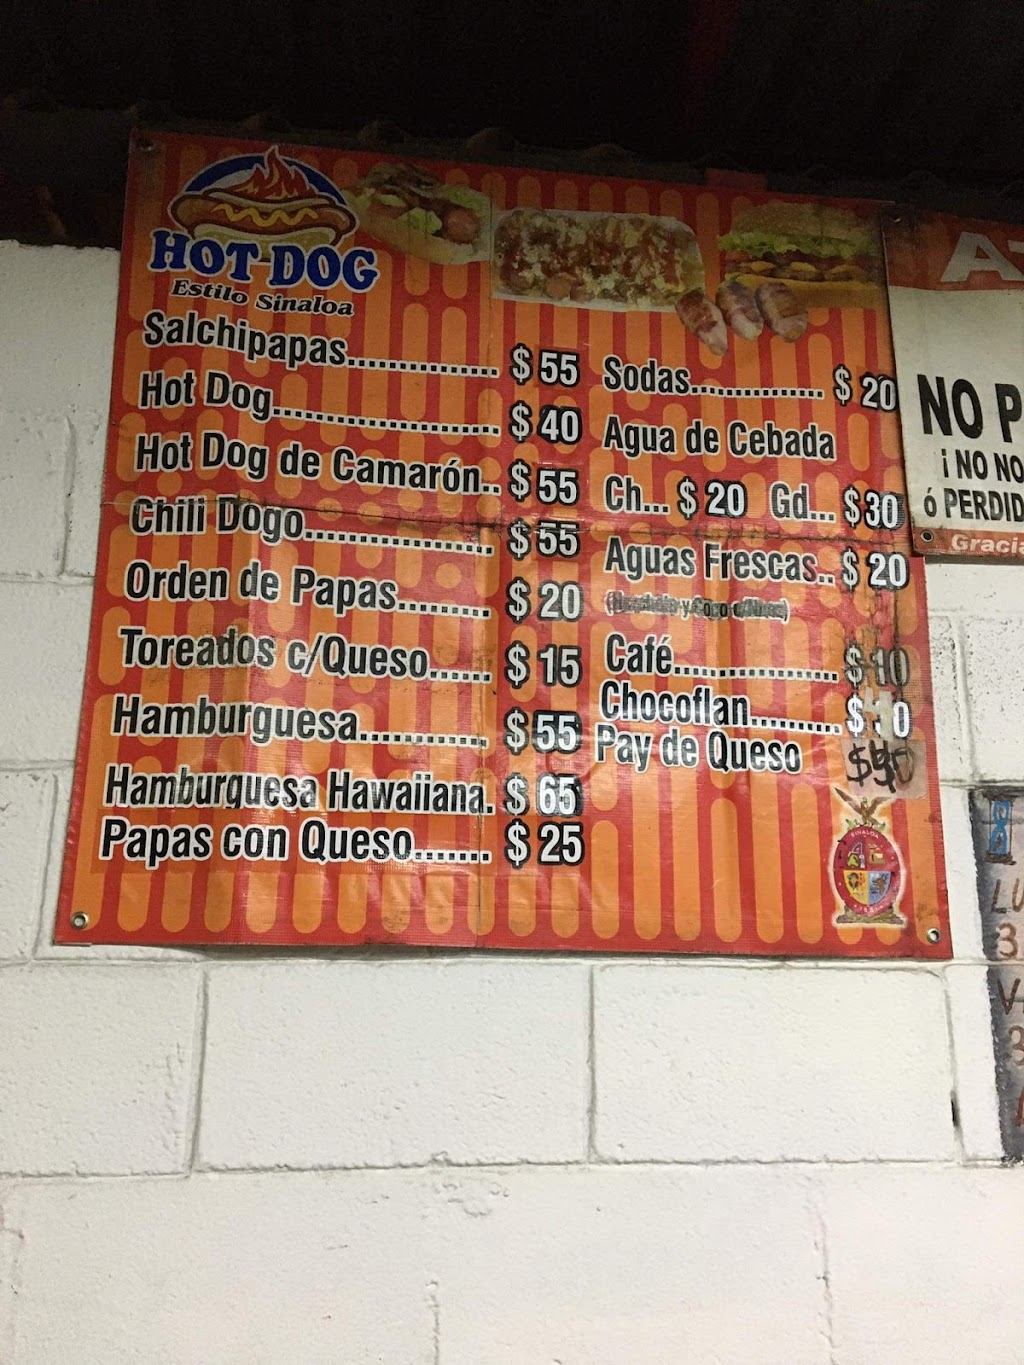 Hot Dogs Estilo Sinaloa | 22710, Calle Estatuto Juridico 121, Plan Libertador, 22706 Rosarito, B.C., Mexico | Phone: 664 708 8255